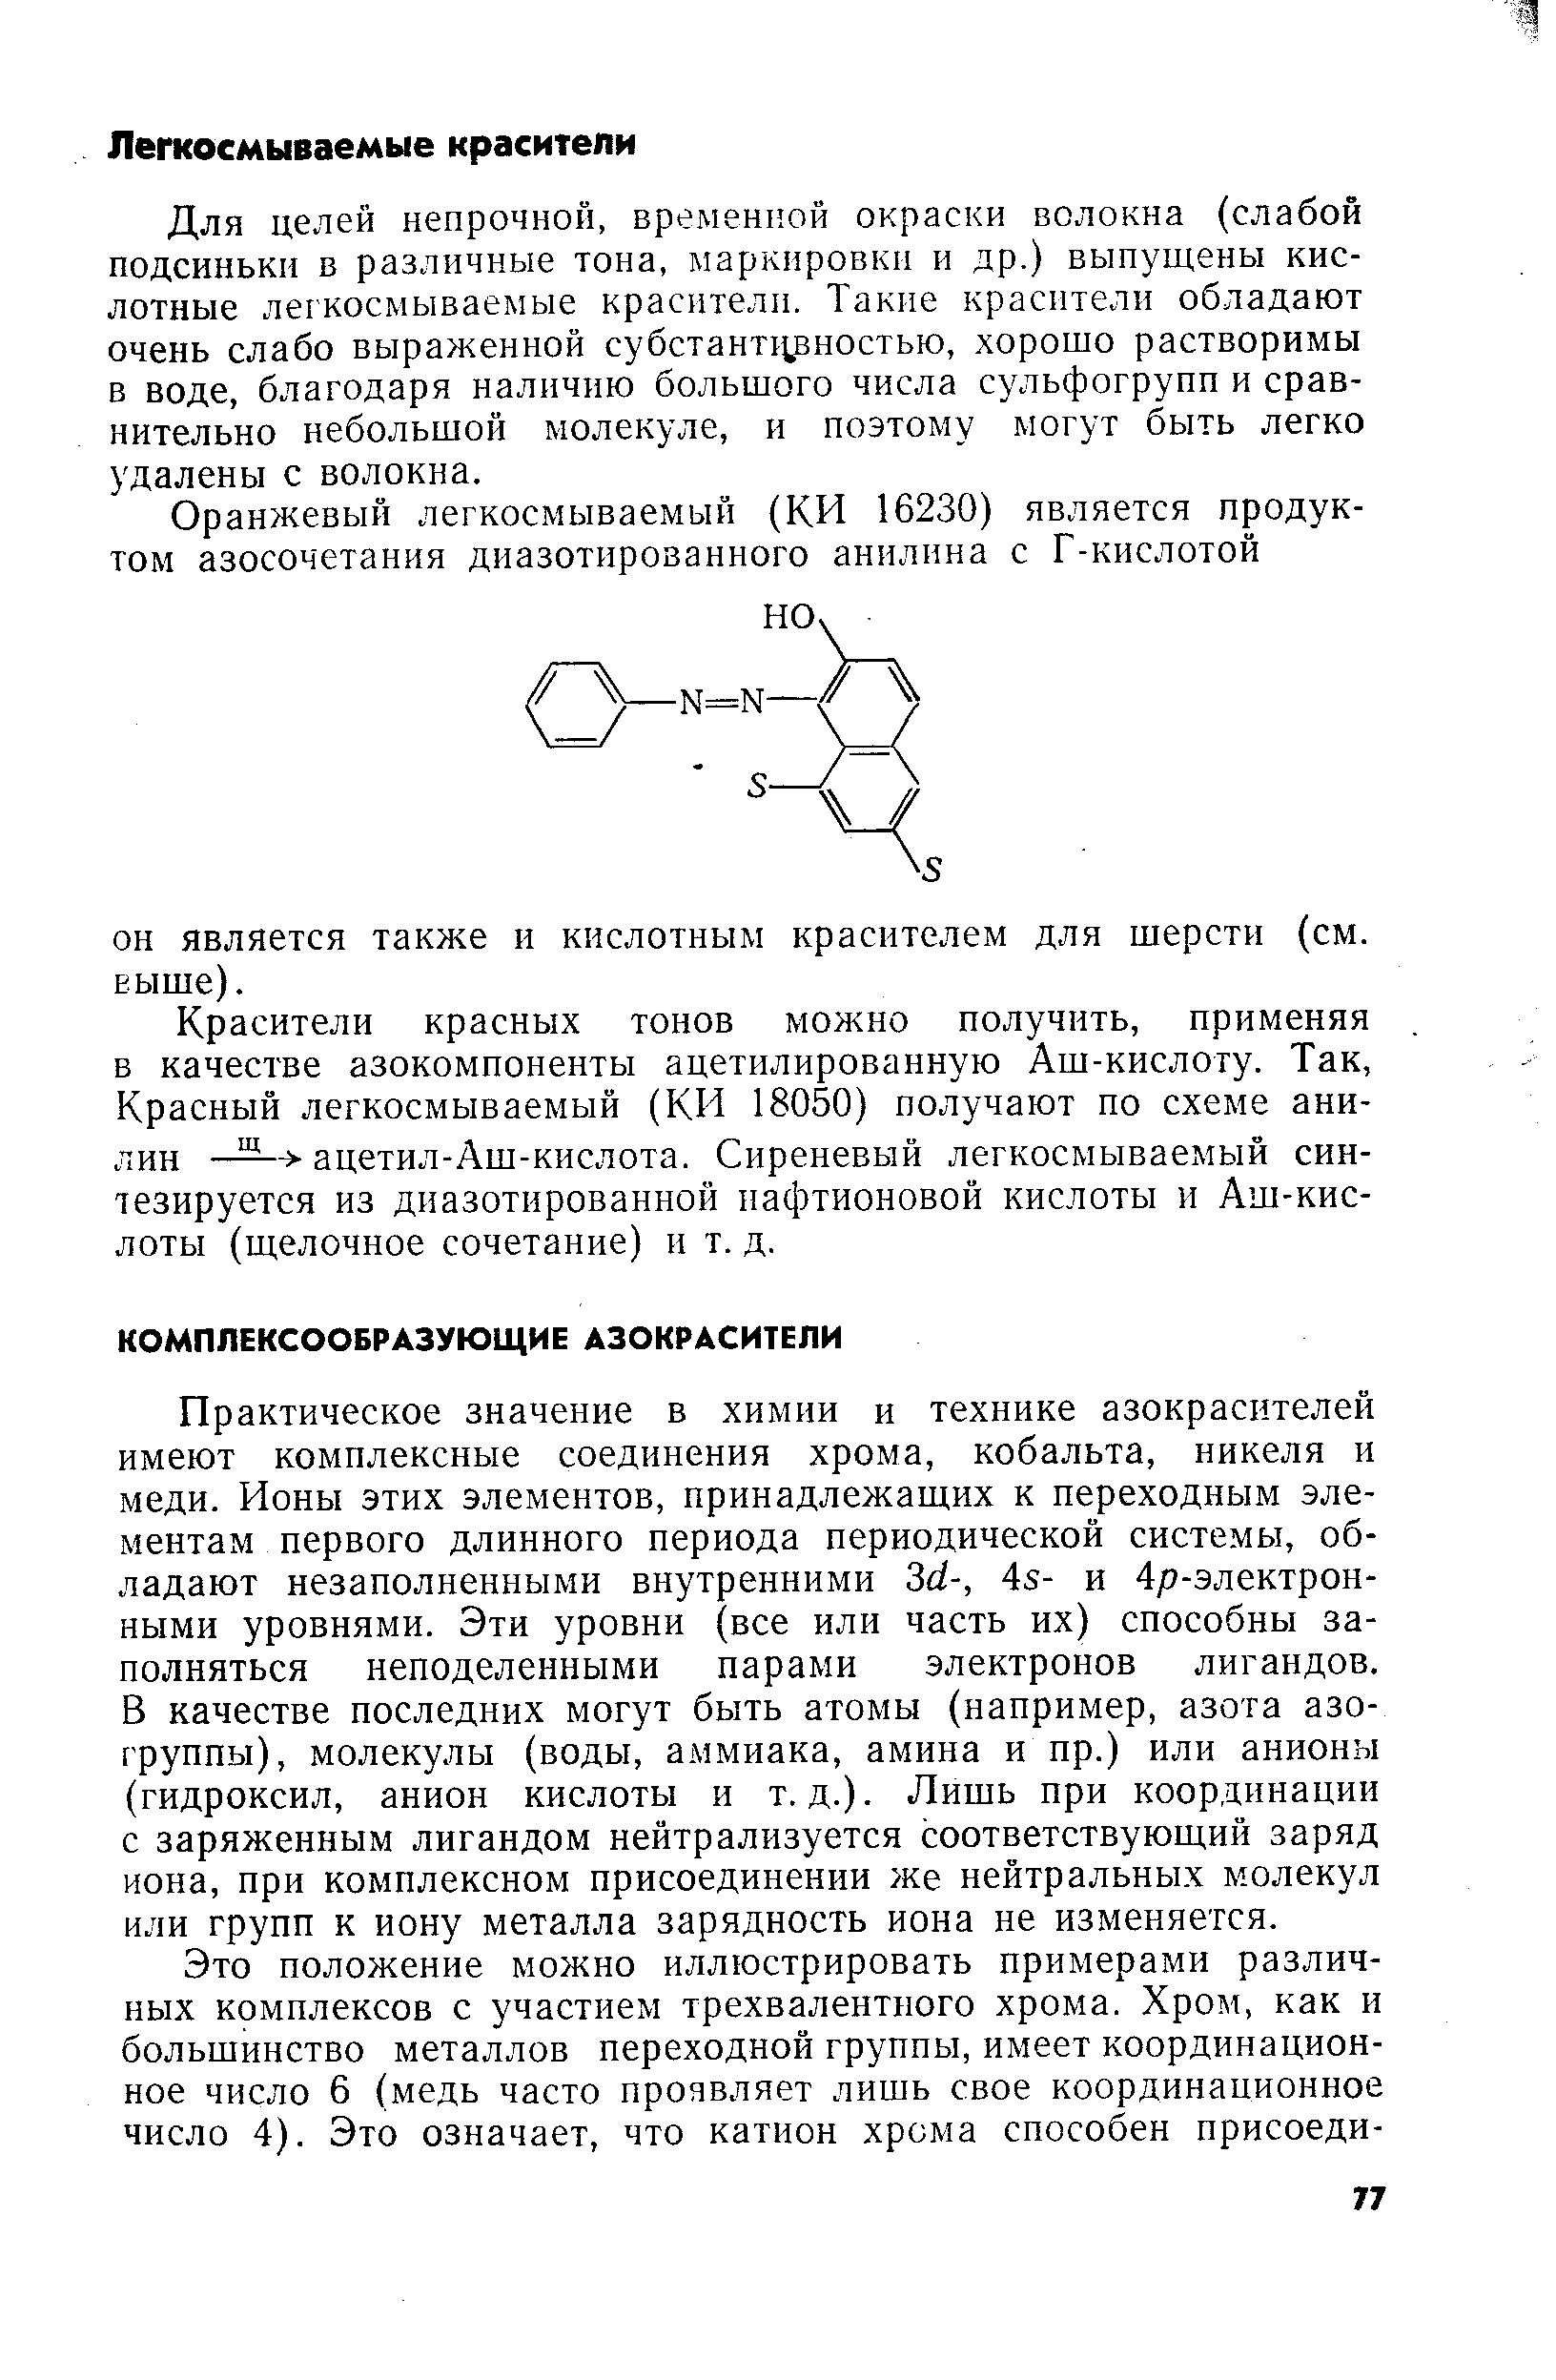 Практическое значение в химии и технике азокрасителей имеют комплексные соединения хрома, кобальта, никеля и меди. Ионы этих элементов, принадлежащих к переходным элементам первого длинного периода периодической системы, обладают незаполненными внутренними 3(1-, 45- и 4р-электрон-ными уровнями. Эти уровни (все или часть их) способны заполняться неподеленными парами электронов лигандов. В качестве последних могут быть атомы (например, азота азогруппы), молекулы (воды, аммиака, амина и пр.) или анионы (гидроксил, анион кислоты и т.д.). Лишь при координации с заряженным лигандом нейтрализуется соответствующий заряд иона, при комплексном присоединении же нейтральных молекул или групп к иону металла зарядность иона не изменяется.